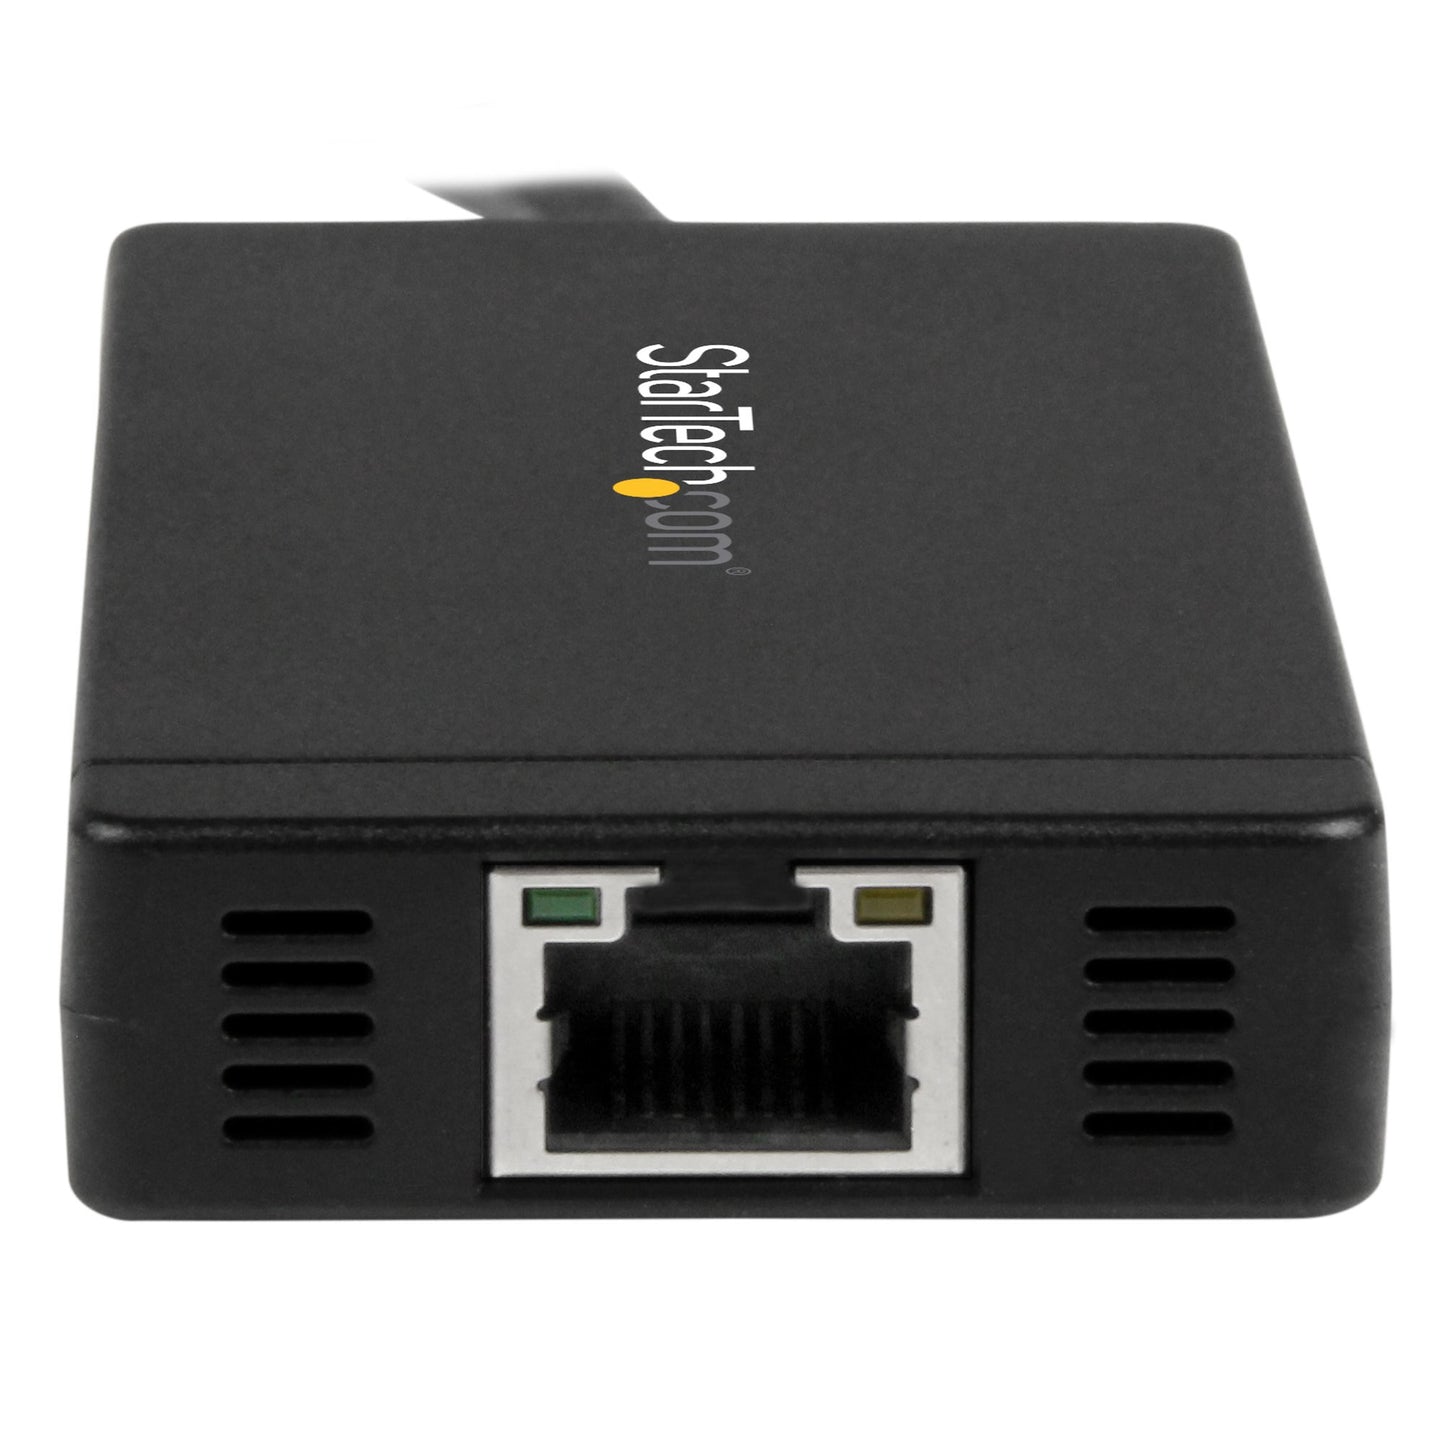 Concentrador USB 3.0  STARTECH de 3 Puertos con USB-C y Ethernet Gigabit - 5Gbps - Hub con Adaptador de Alimentación - 3 puertos USB, color negro